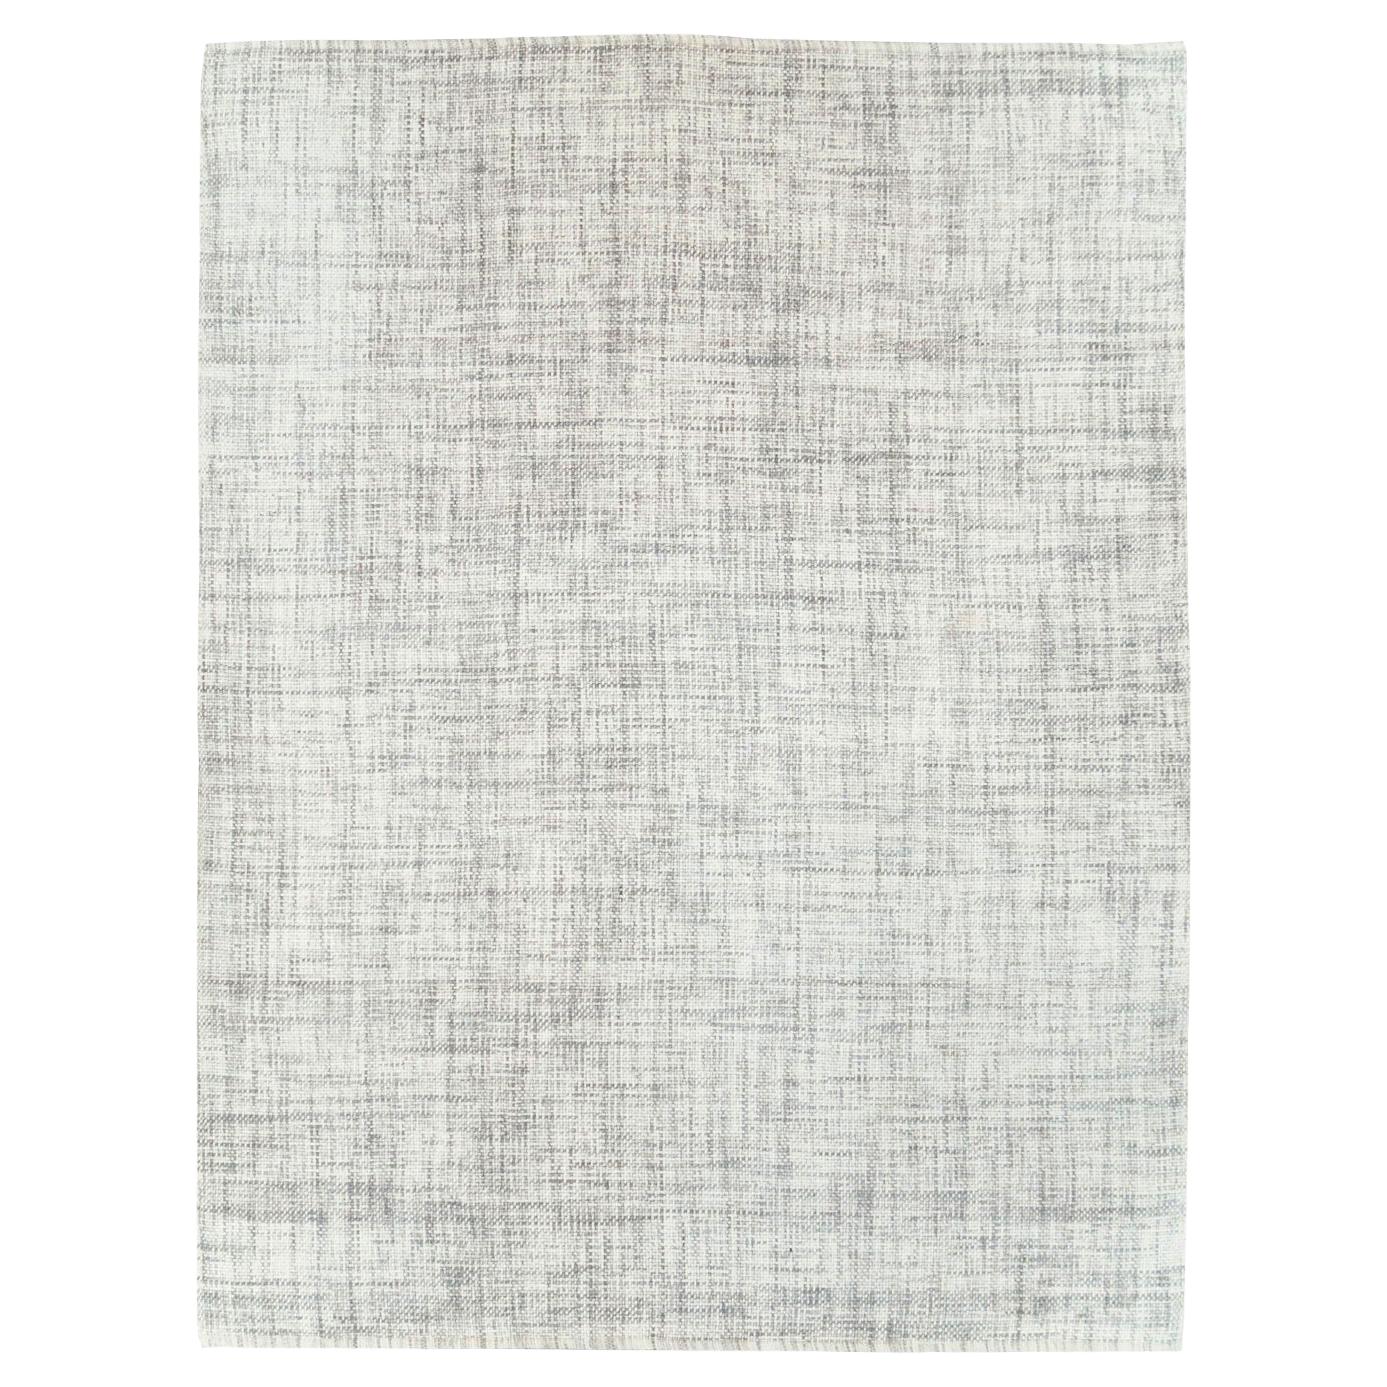 Zeitgenössischer handgefertigter türkischer Teppich in Zimmergröße in Weiß und Grau